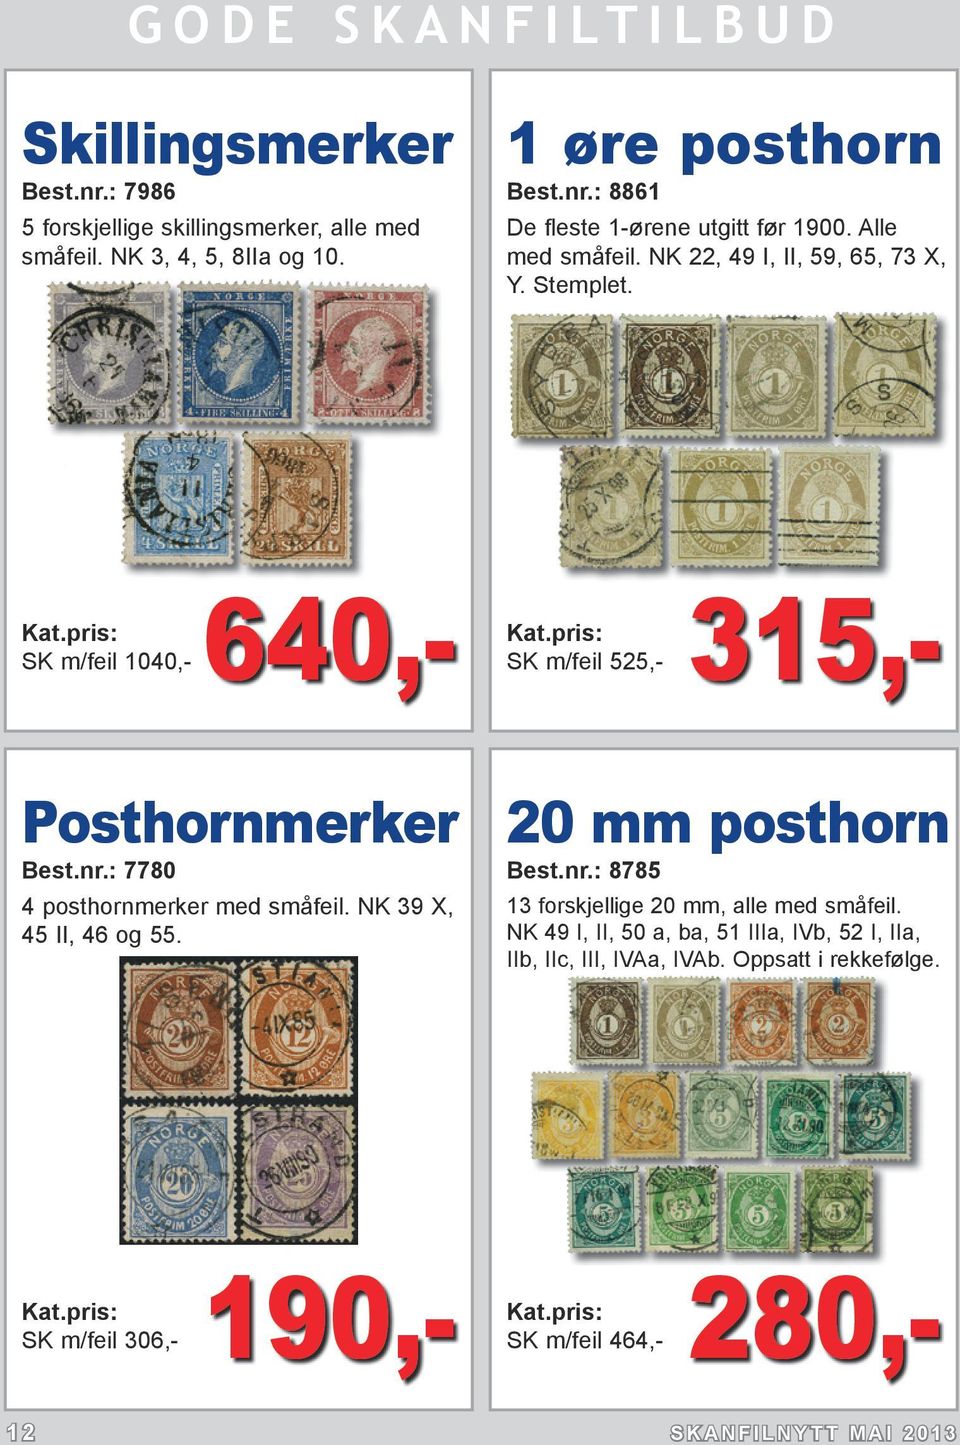 : 7780 4 posthornmerker med småfeil. NK 39 X, 45 II, 46 og 55. 20 mm posthorn Best.nr.: 8785 13 forskjellige 20 mm, alle med småfeil.